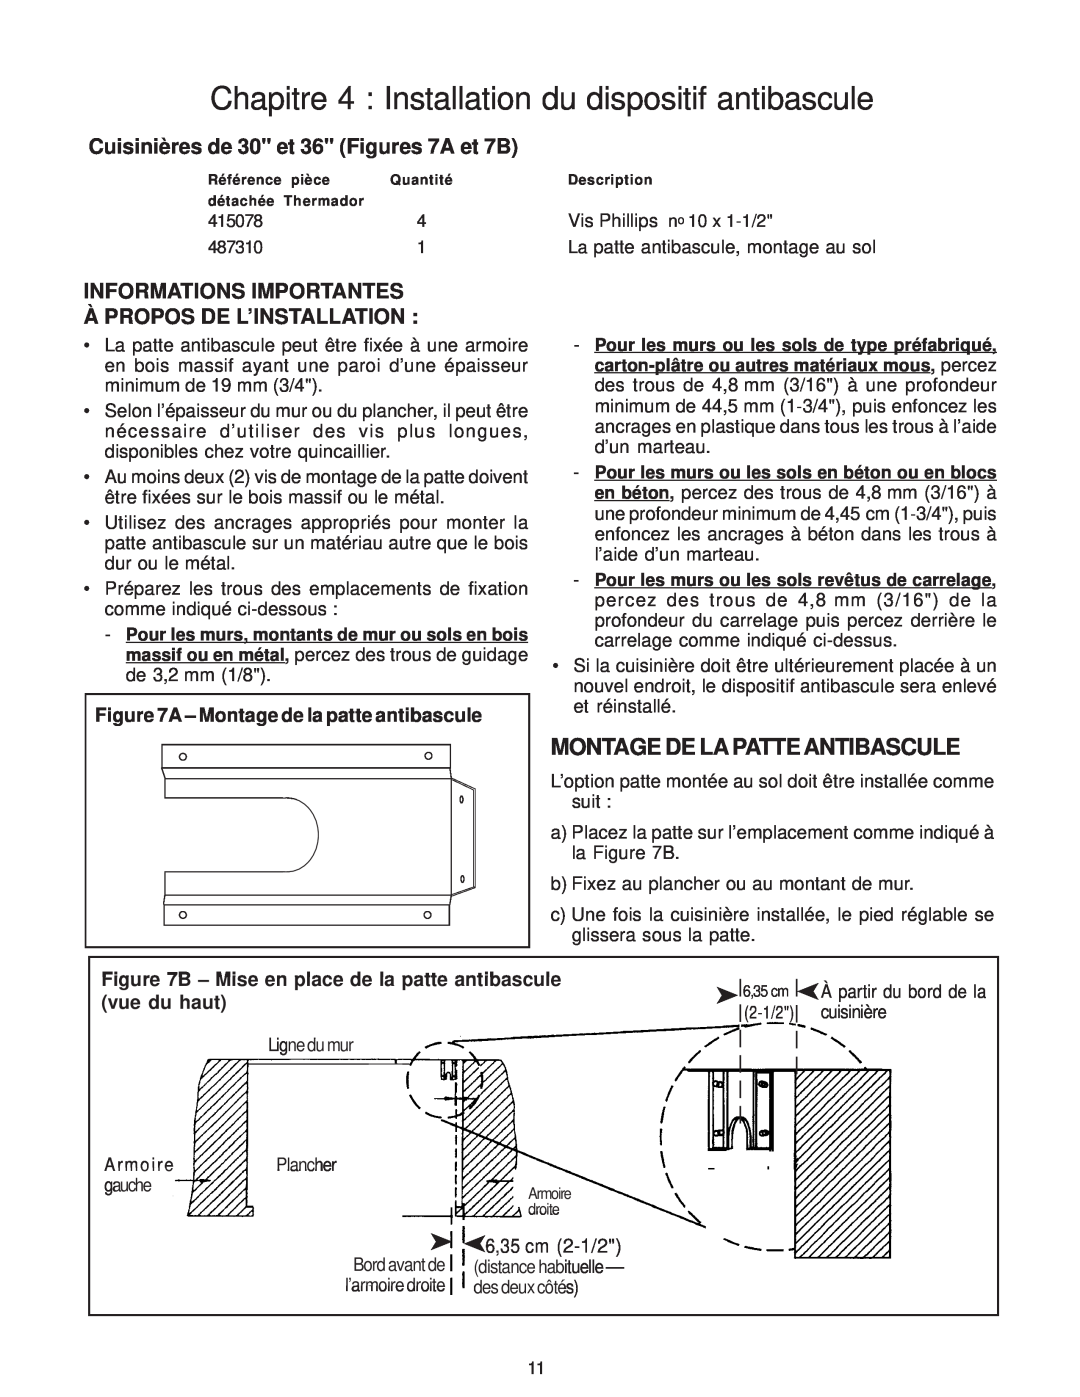 Thermador PD30 installation instructions Montage De Lapatte Antibascule, Cuisinières de 30 et 36 Figures 7A et 7B 